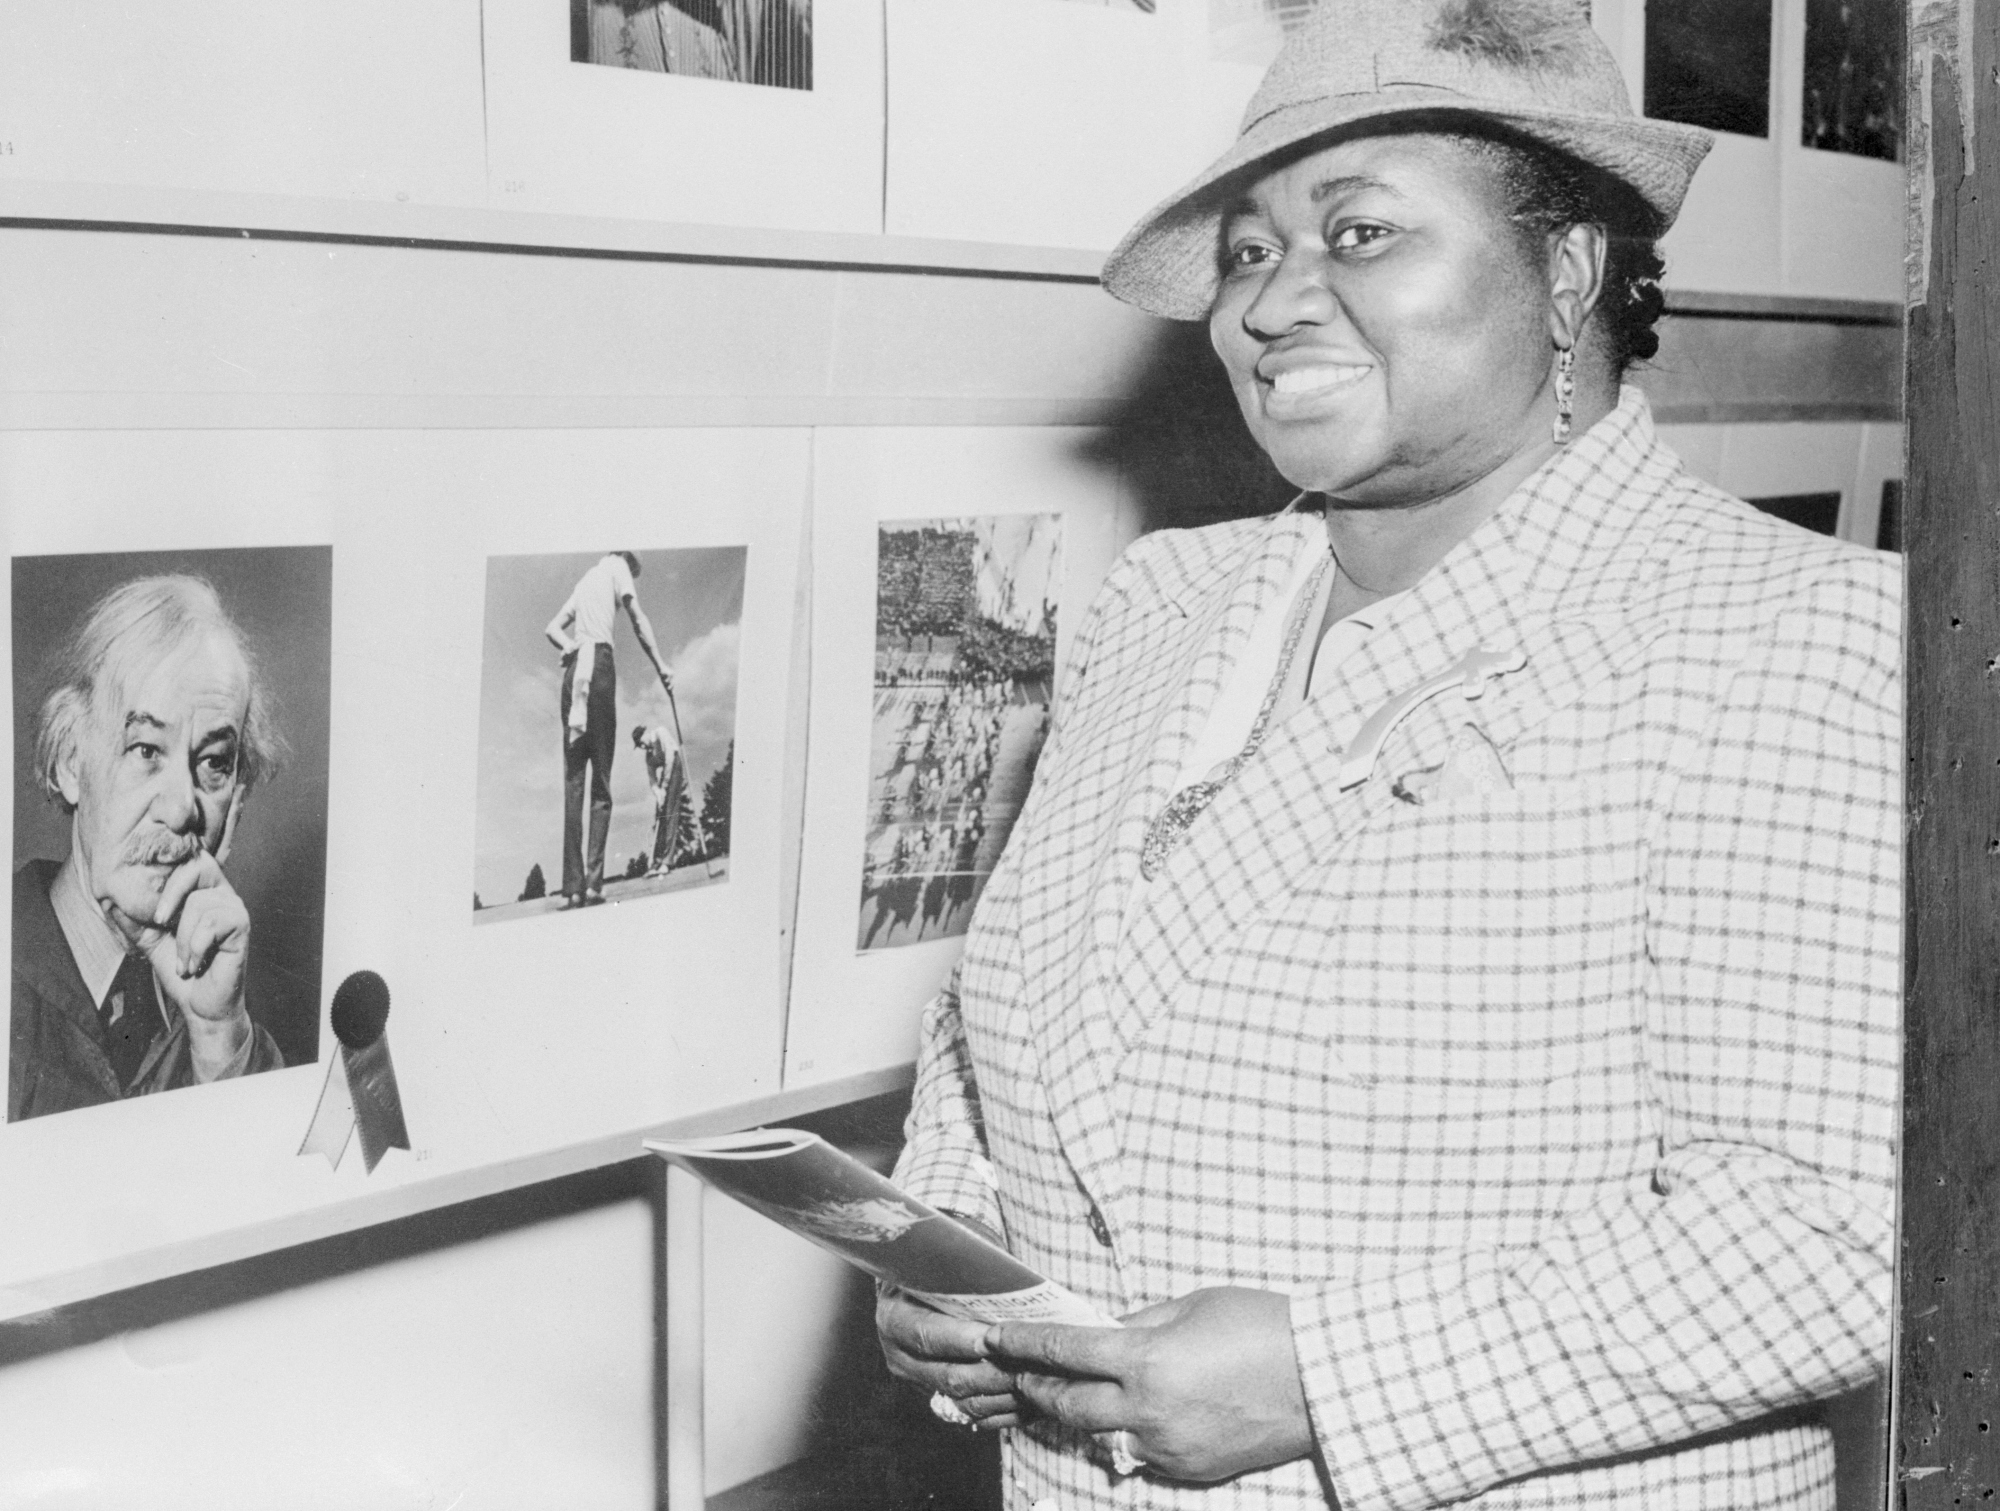 Une photo en noir et blanc de Hattie McDaniel posant devant une exposition de photos.